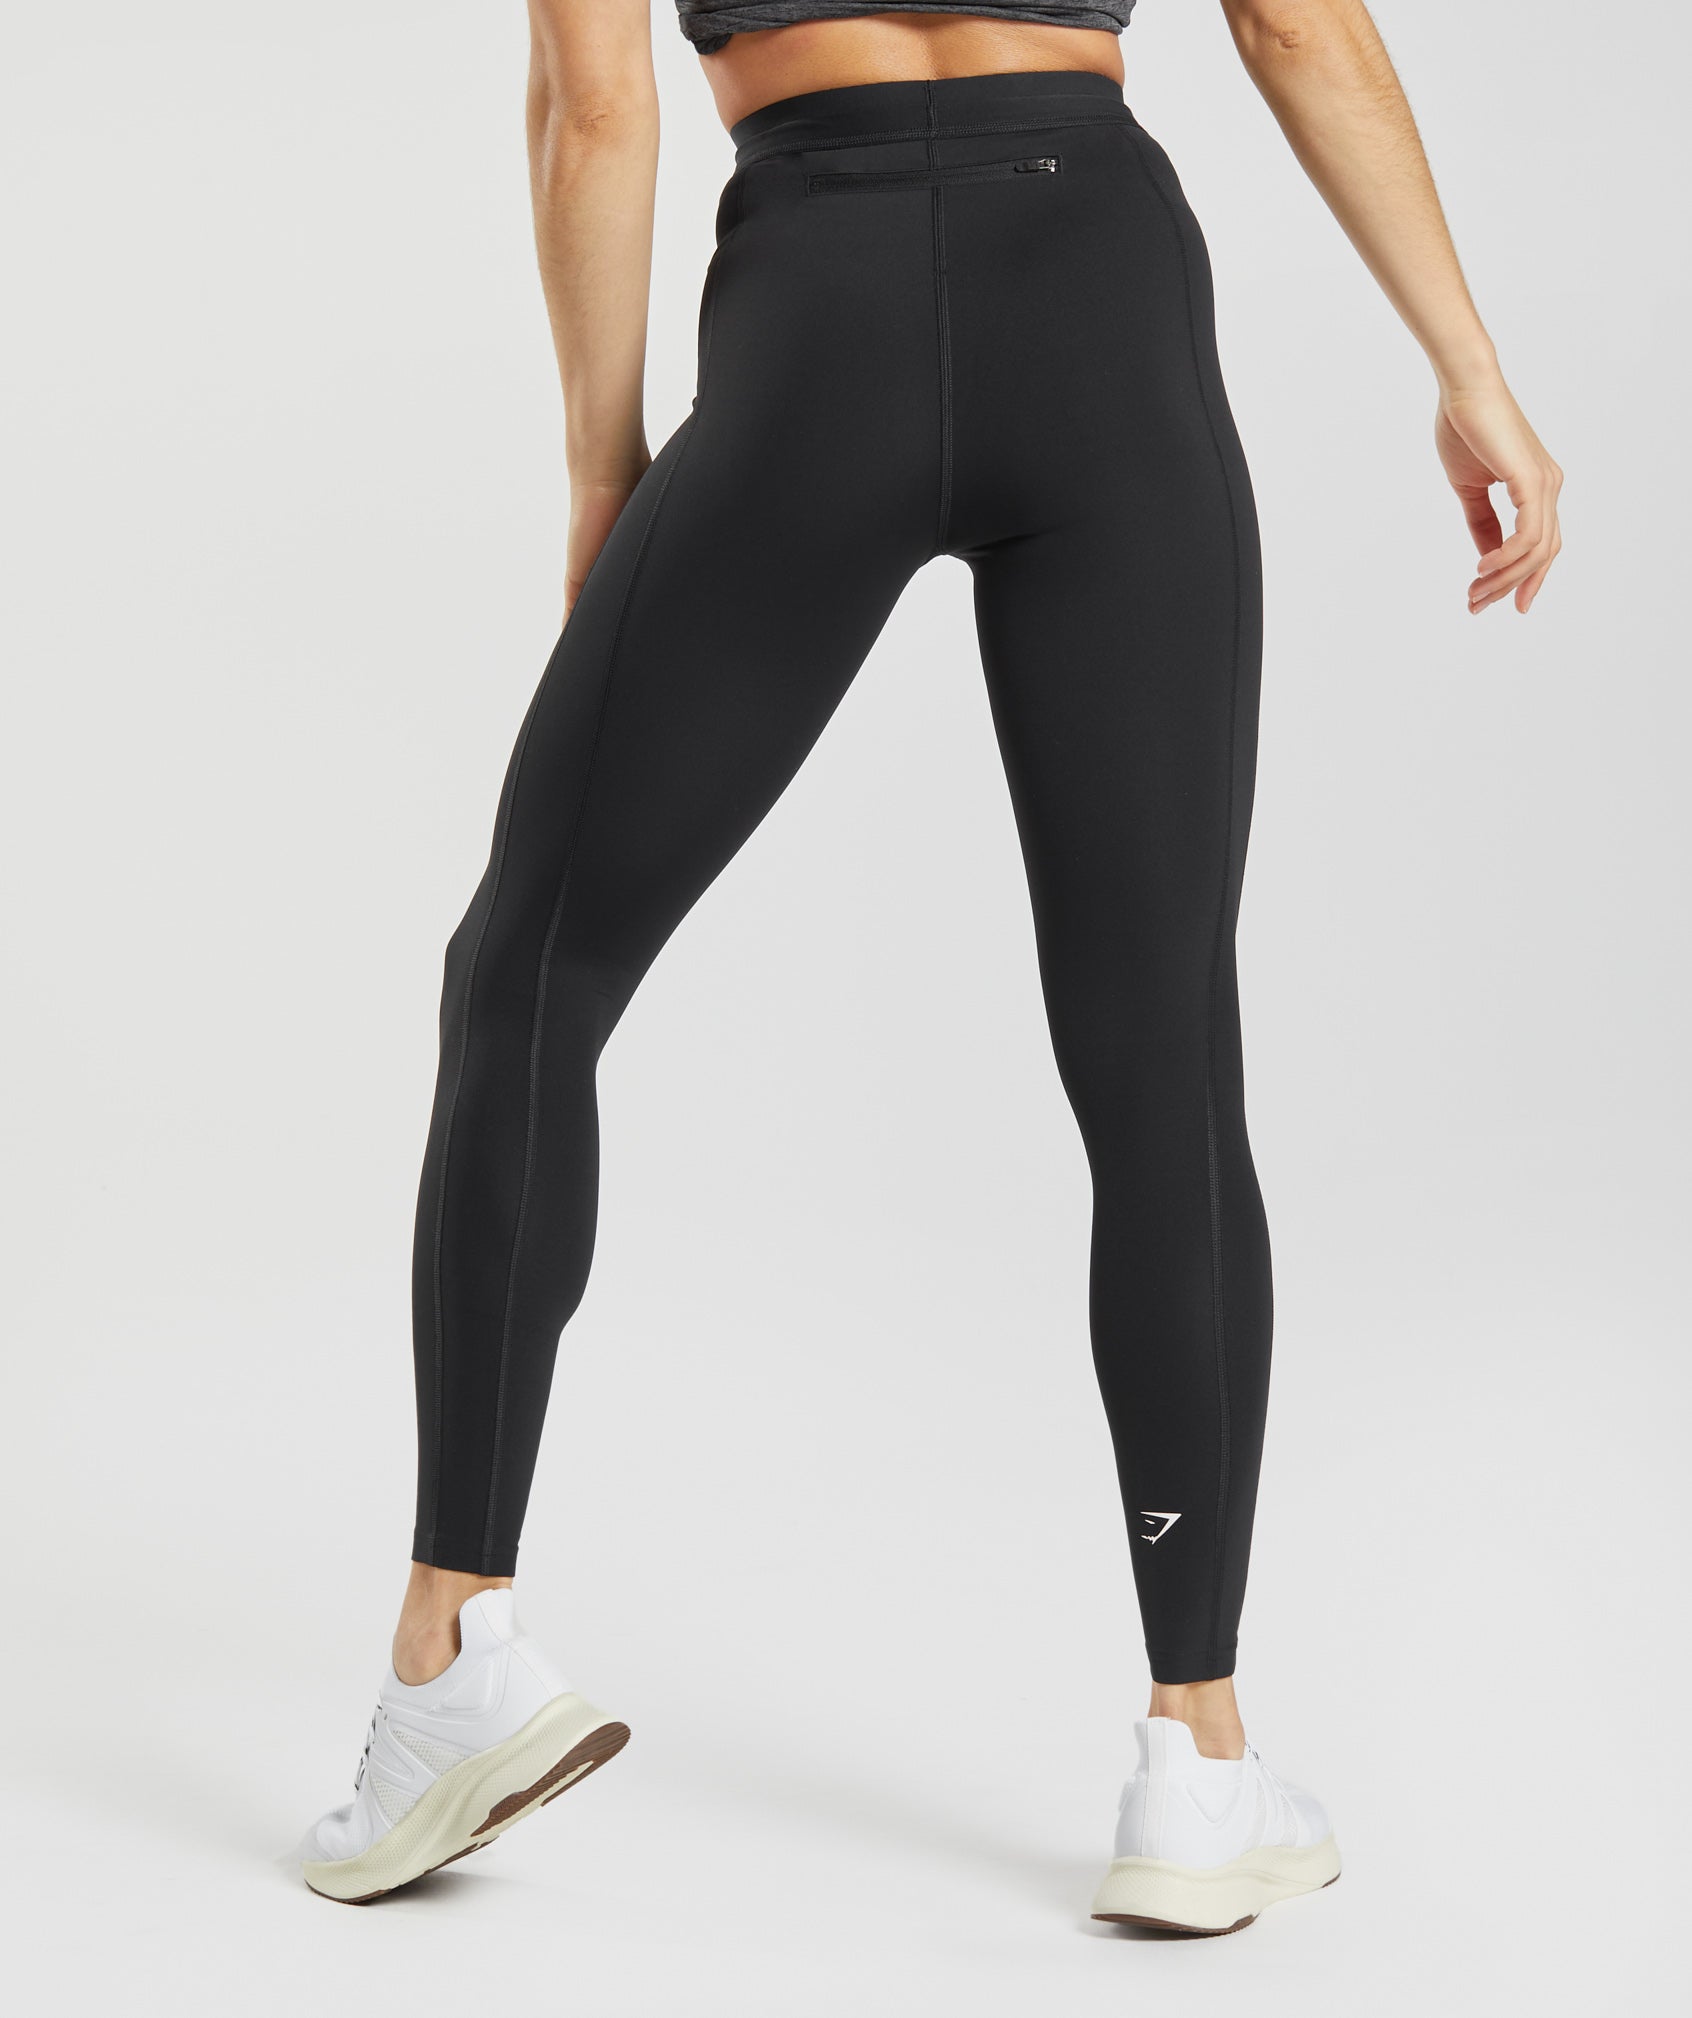 Nike Dri-Fit Full-Length Running Leggings - Women's XL  Running leggings  women, Running leggings, Women's leggings